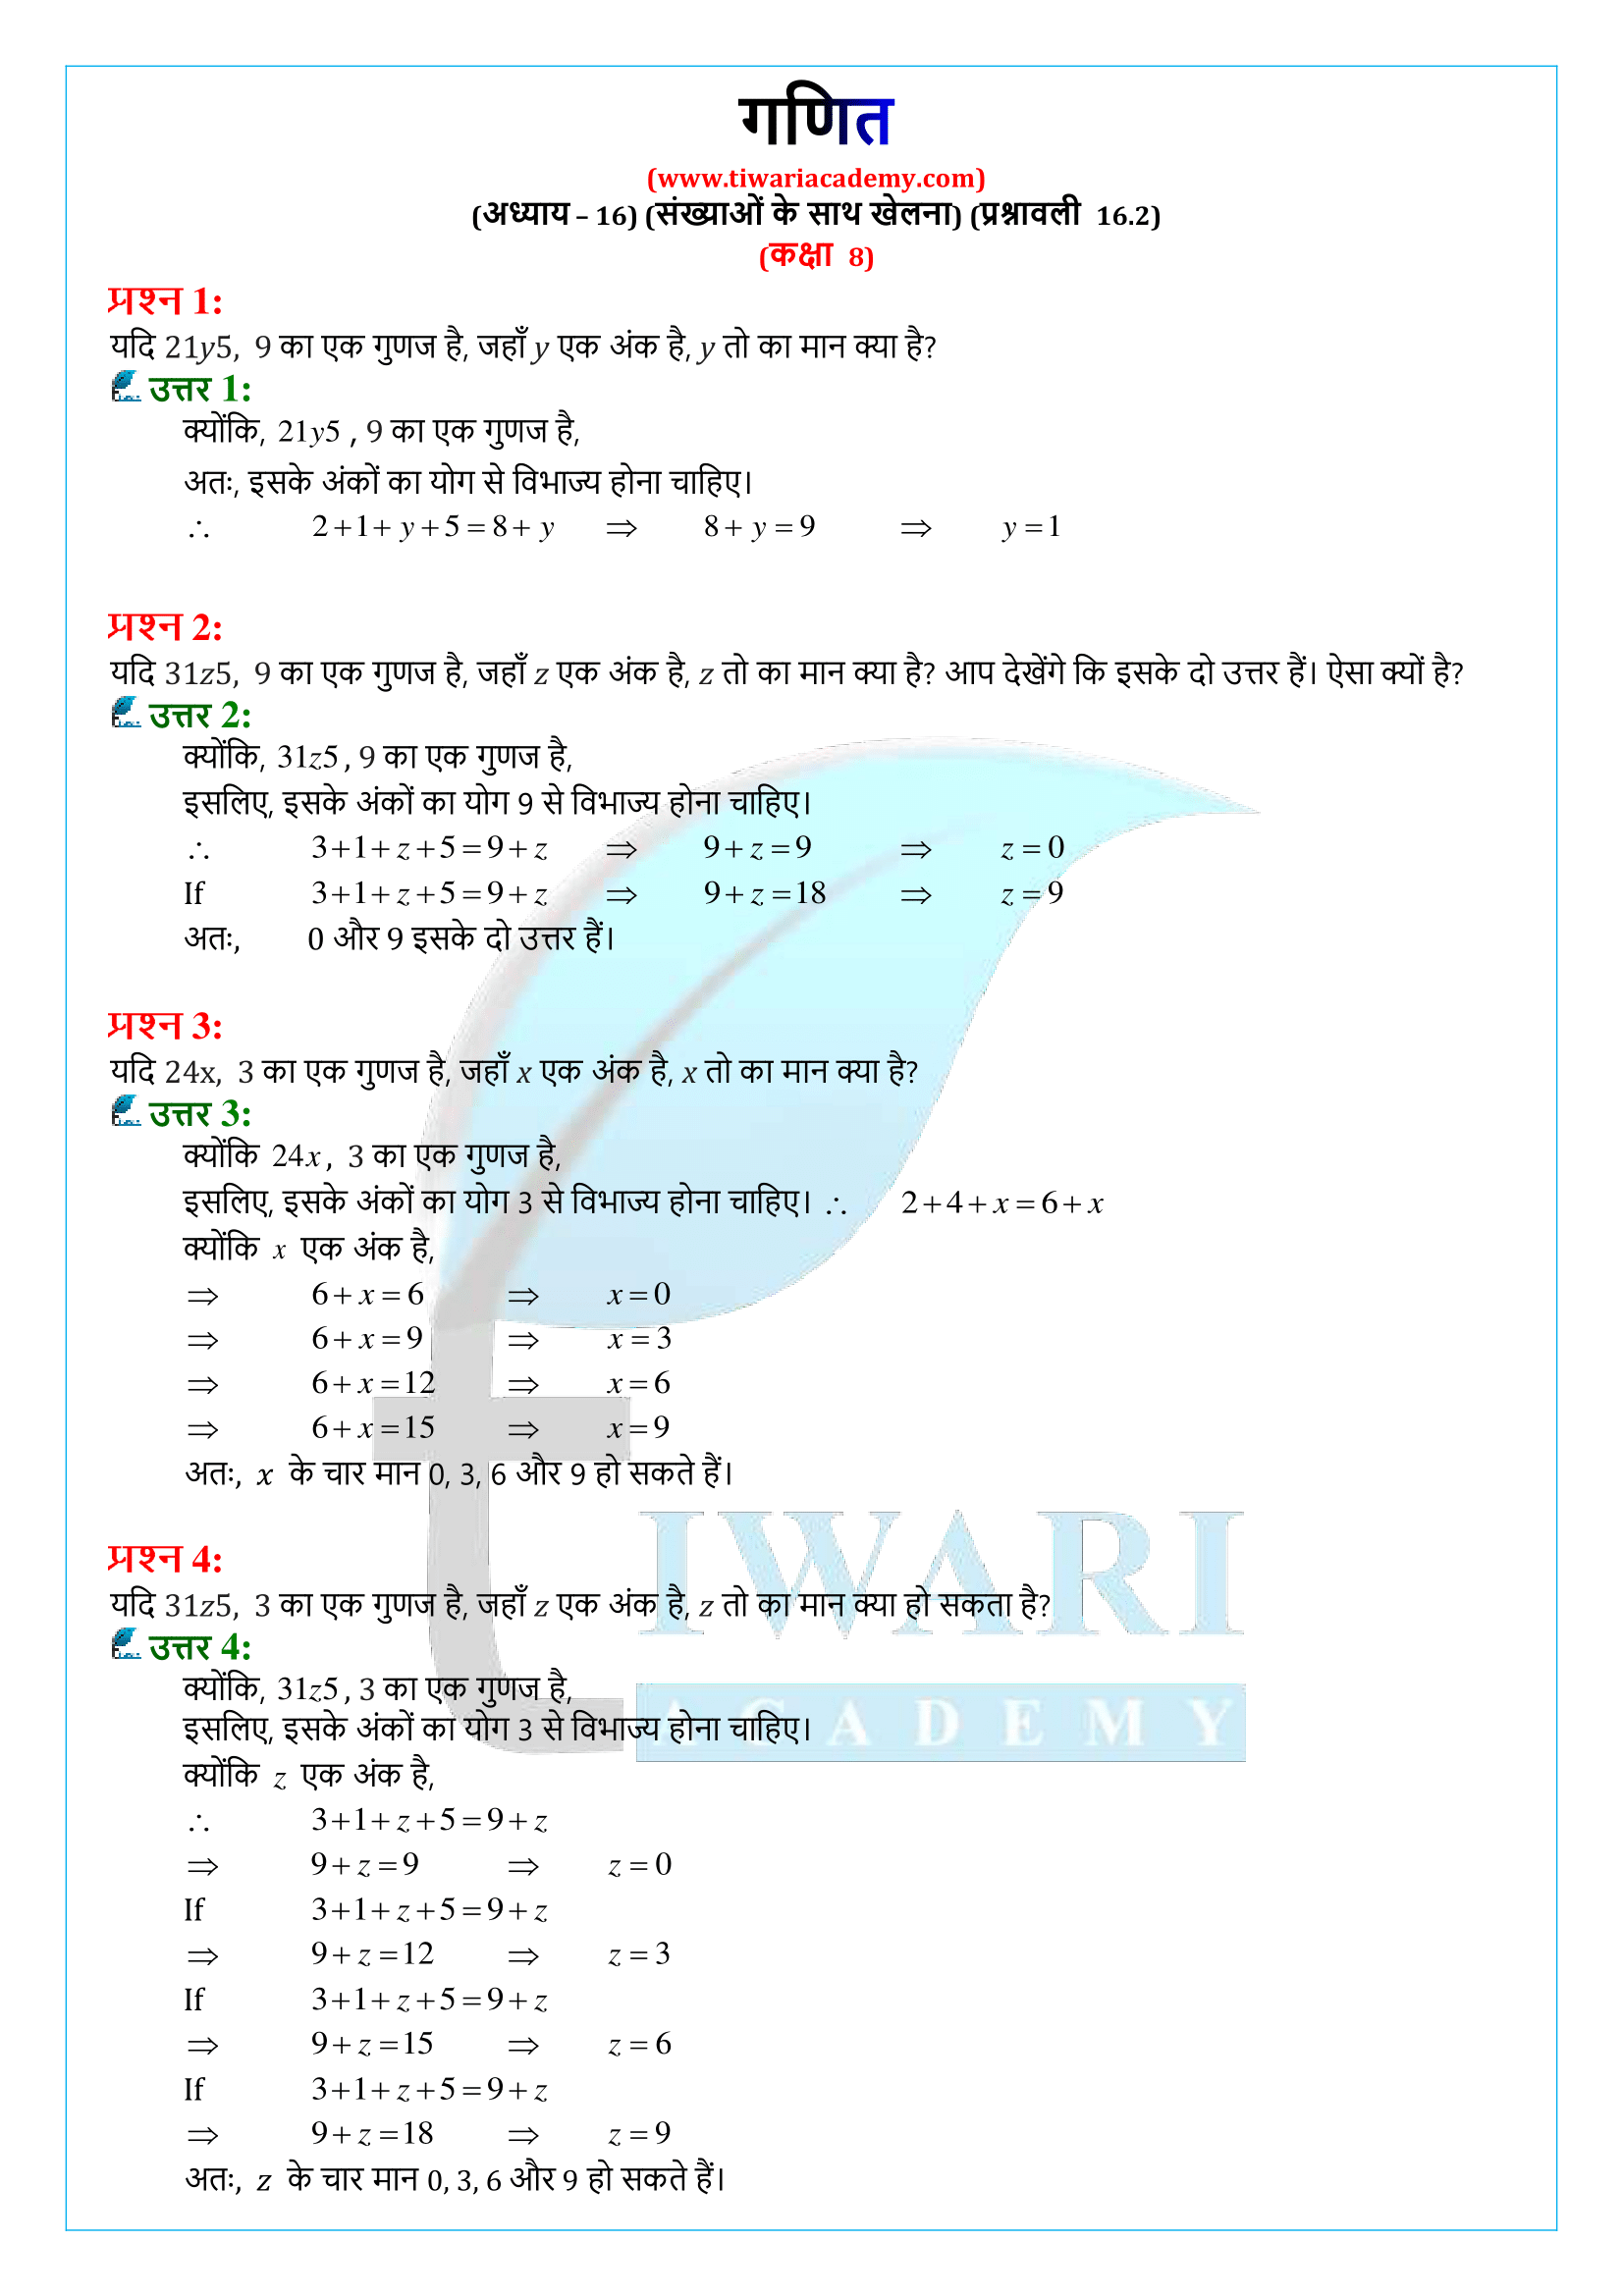 कक्षा 8 गणित प्रश्नावली 16.2 के हल